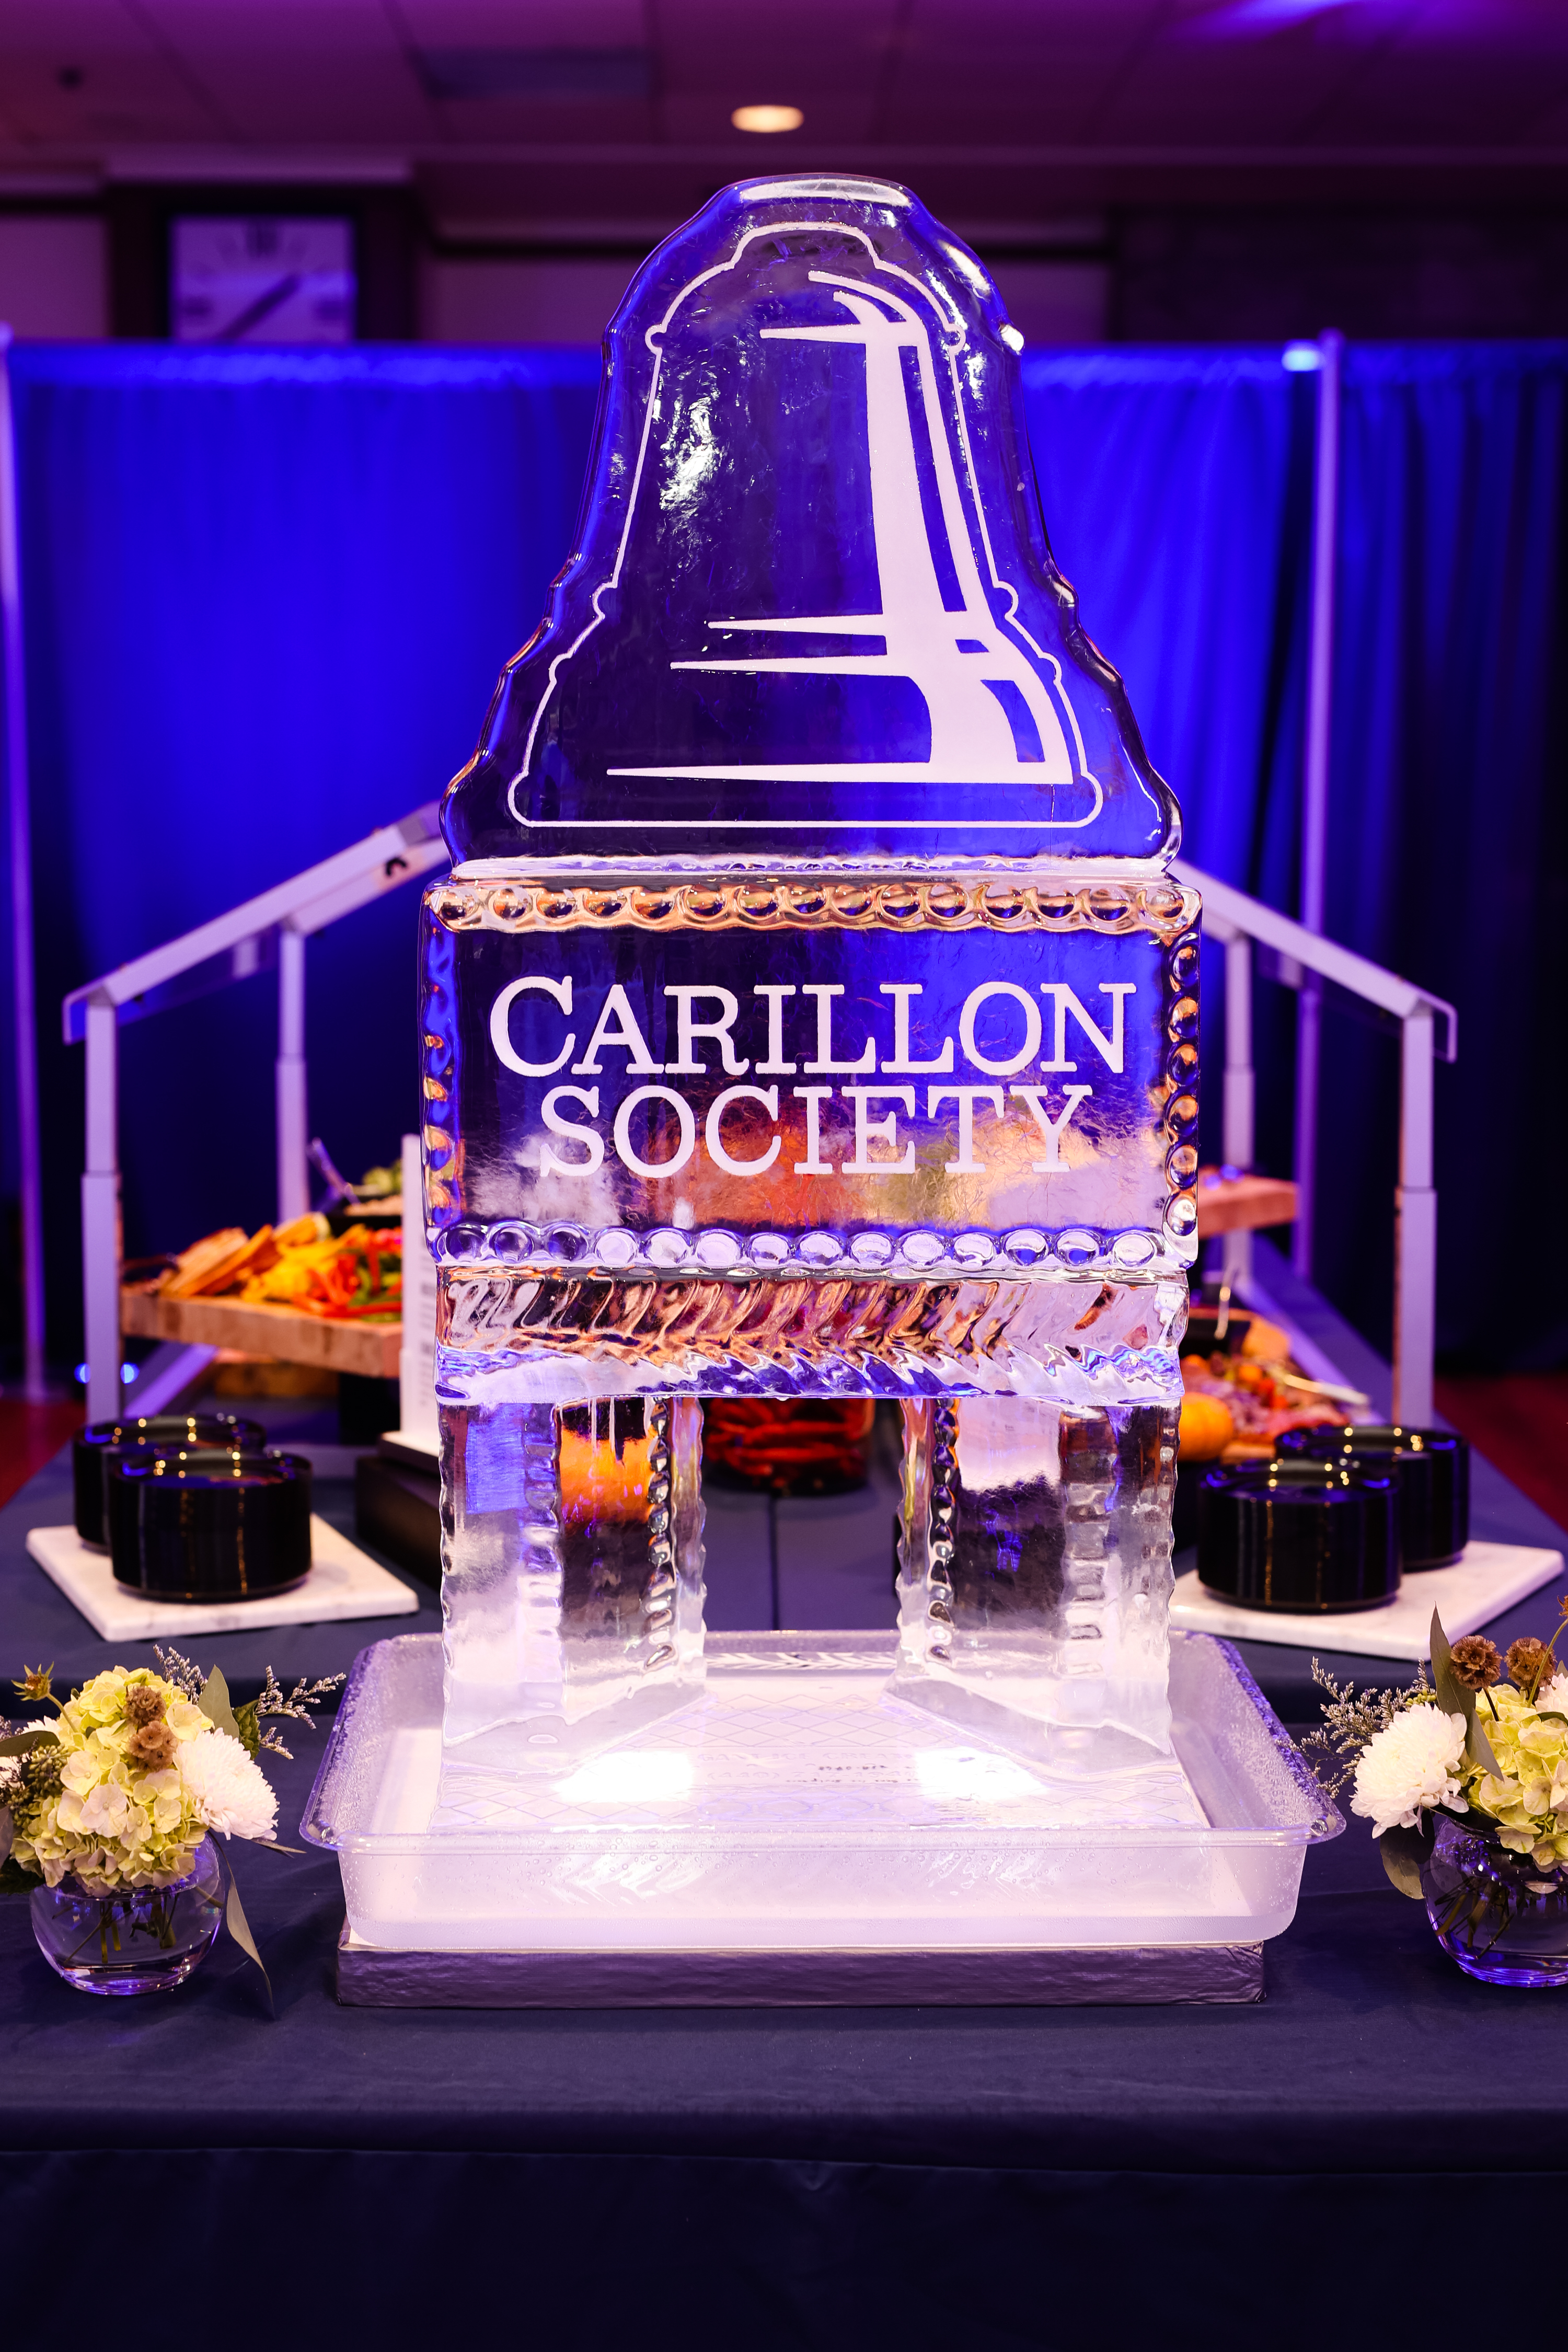 Carillon Society